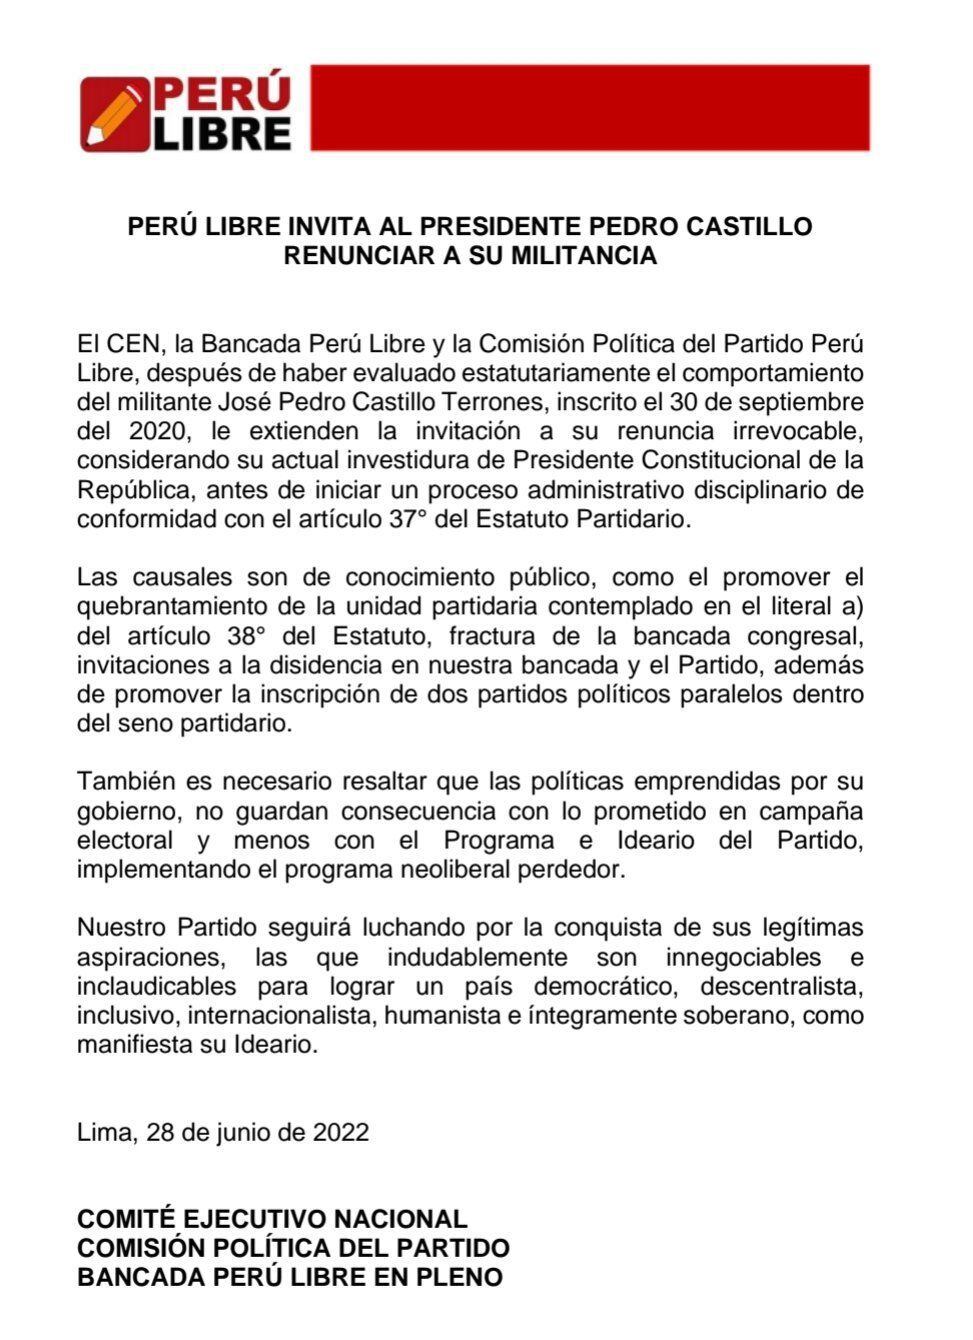 El pronunciamiento del partido Perú Libre.